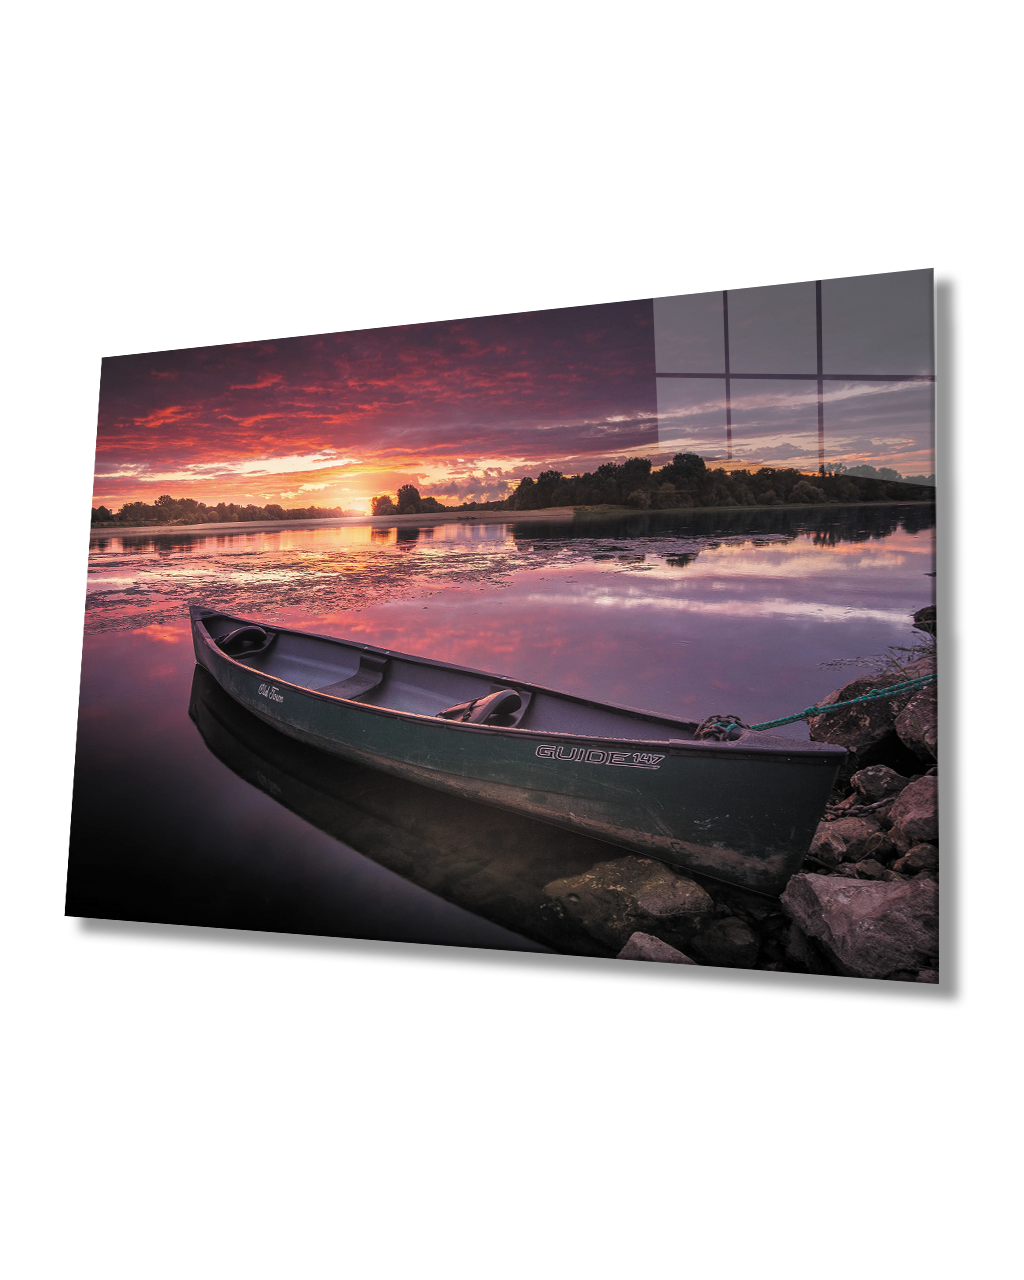 Gün Batımı Kayık Cam Tablo  4mm Dayanıklı Temperli Cam Sunset Kayak Glass Table 4mm Durable Tempered Glass